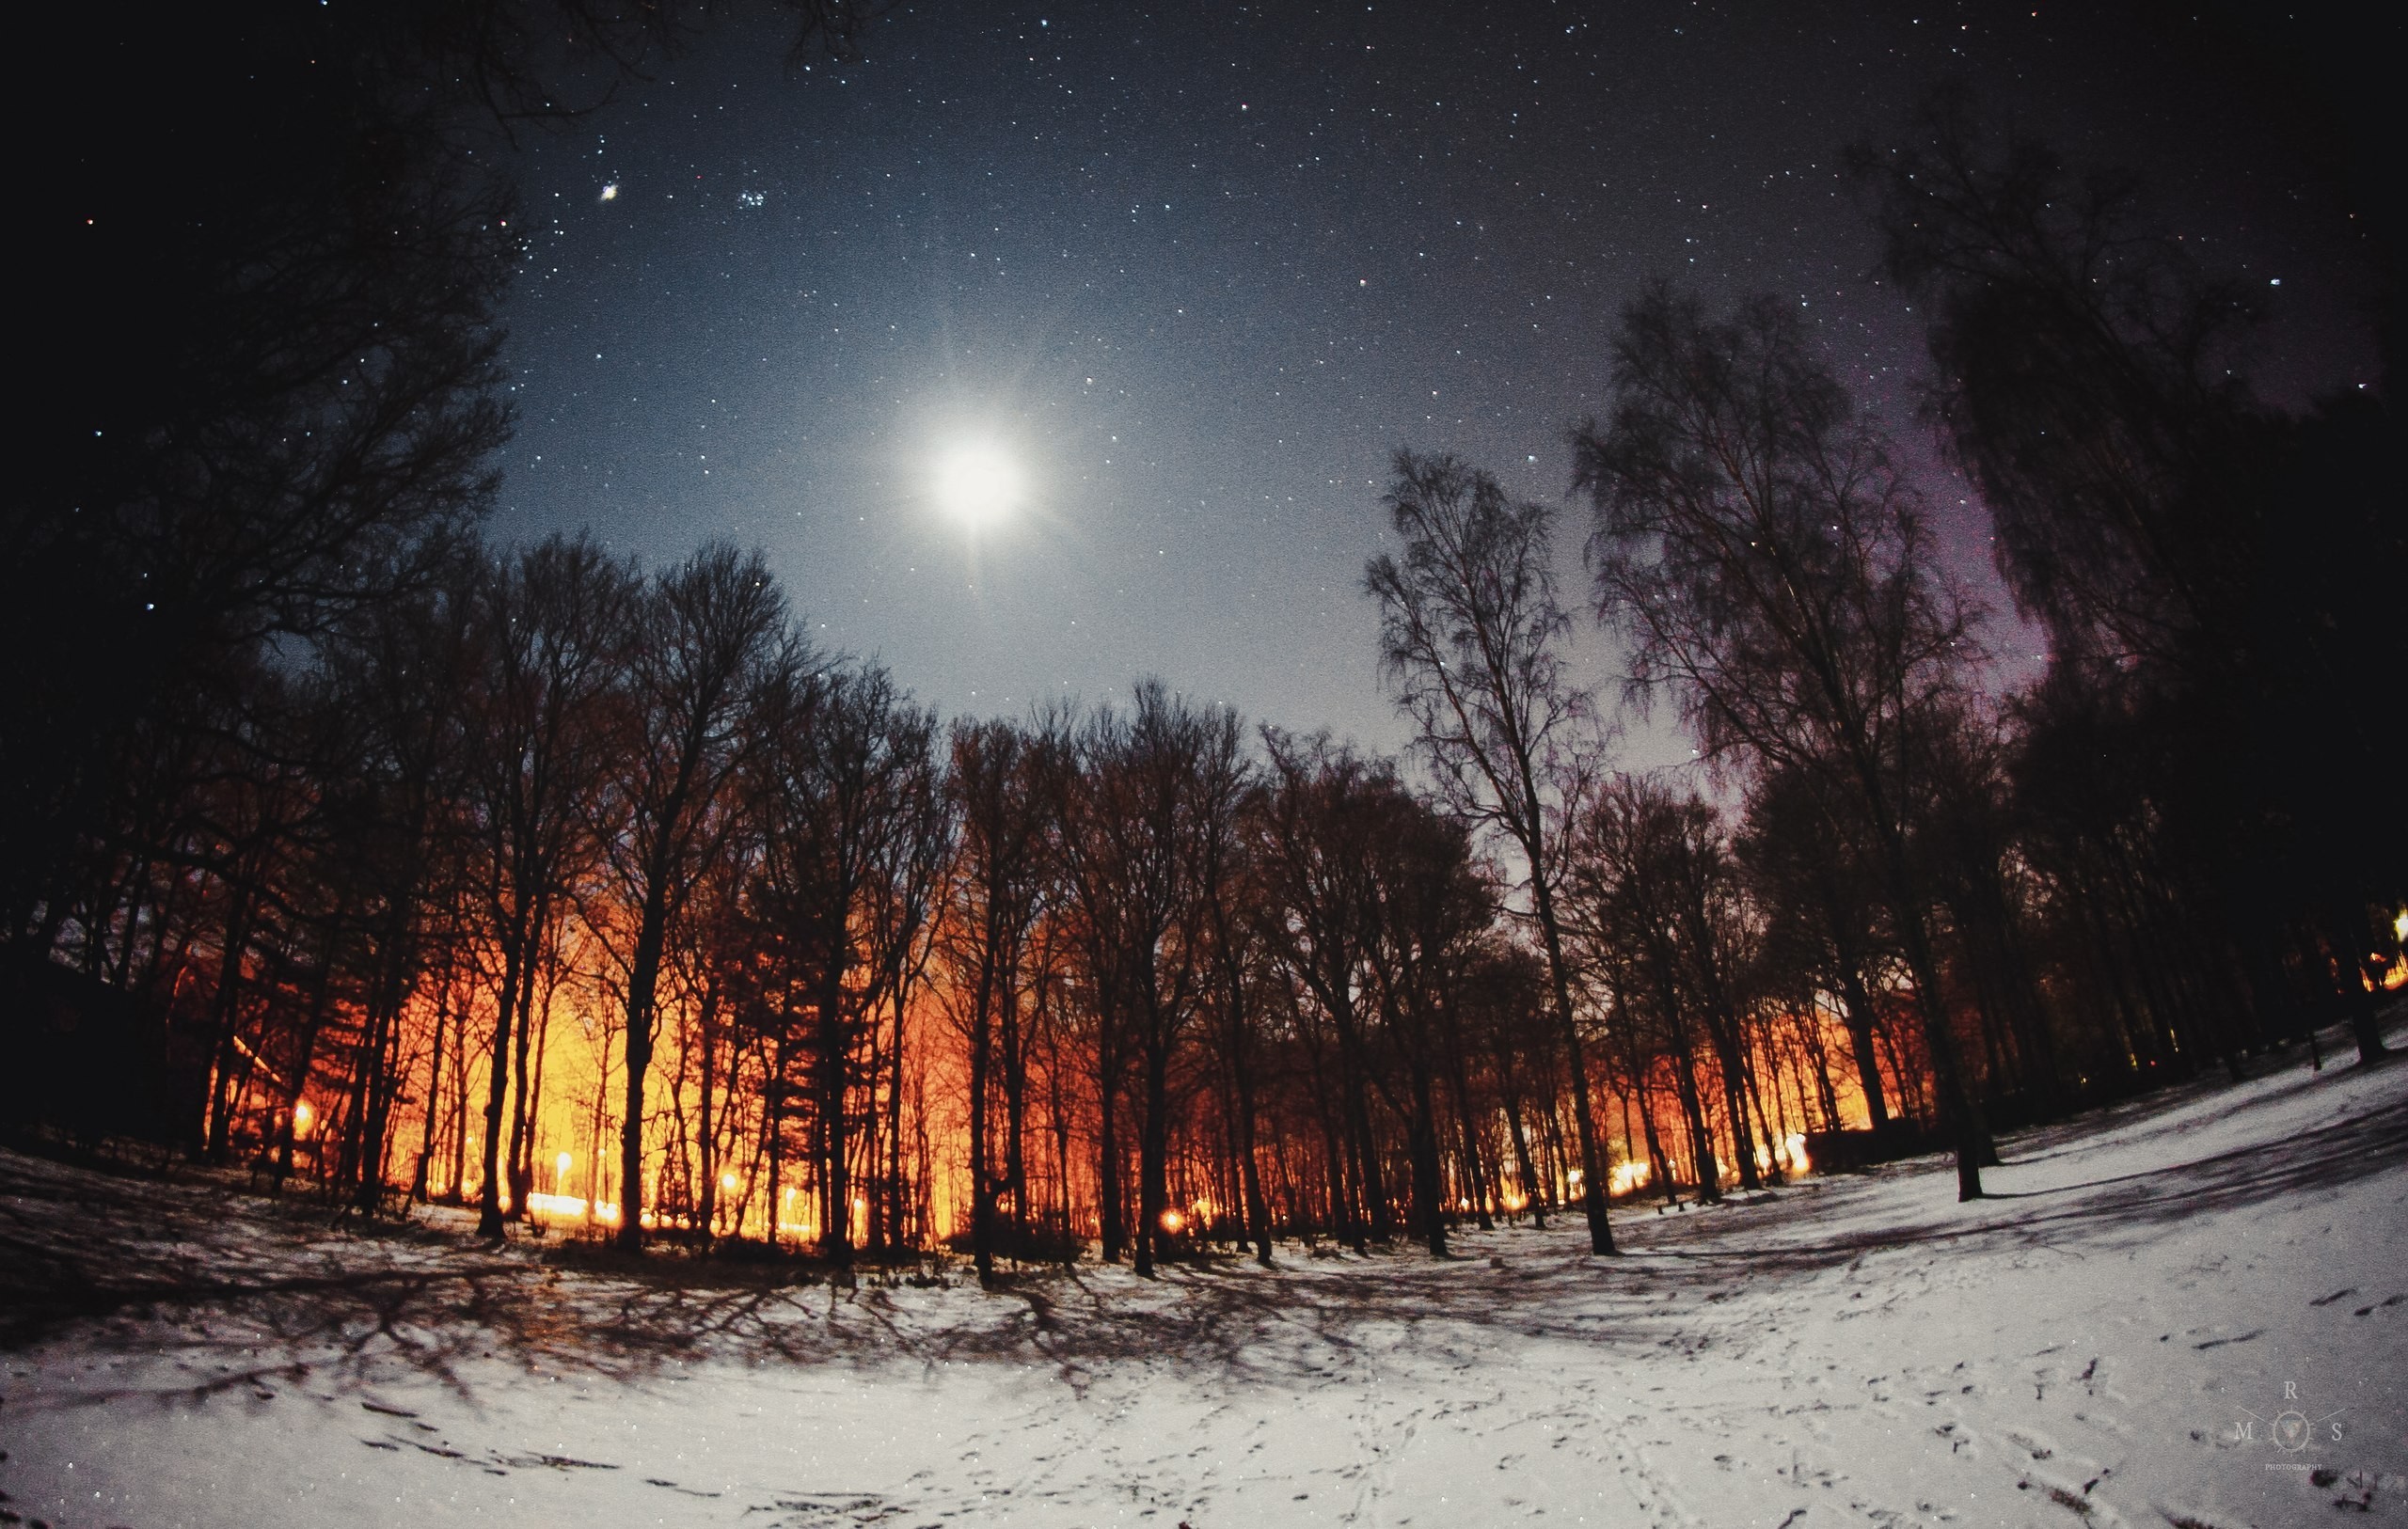 Ảnh đêm trong rừng tuyết đẹp